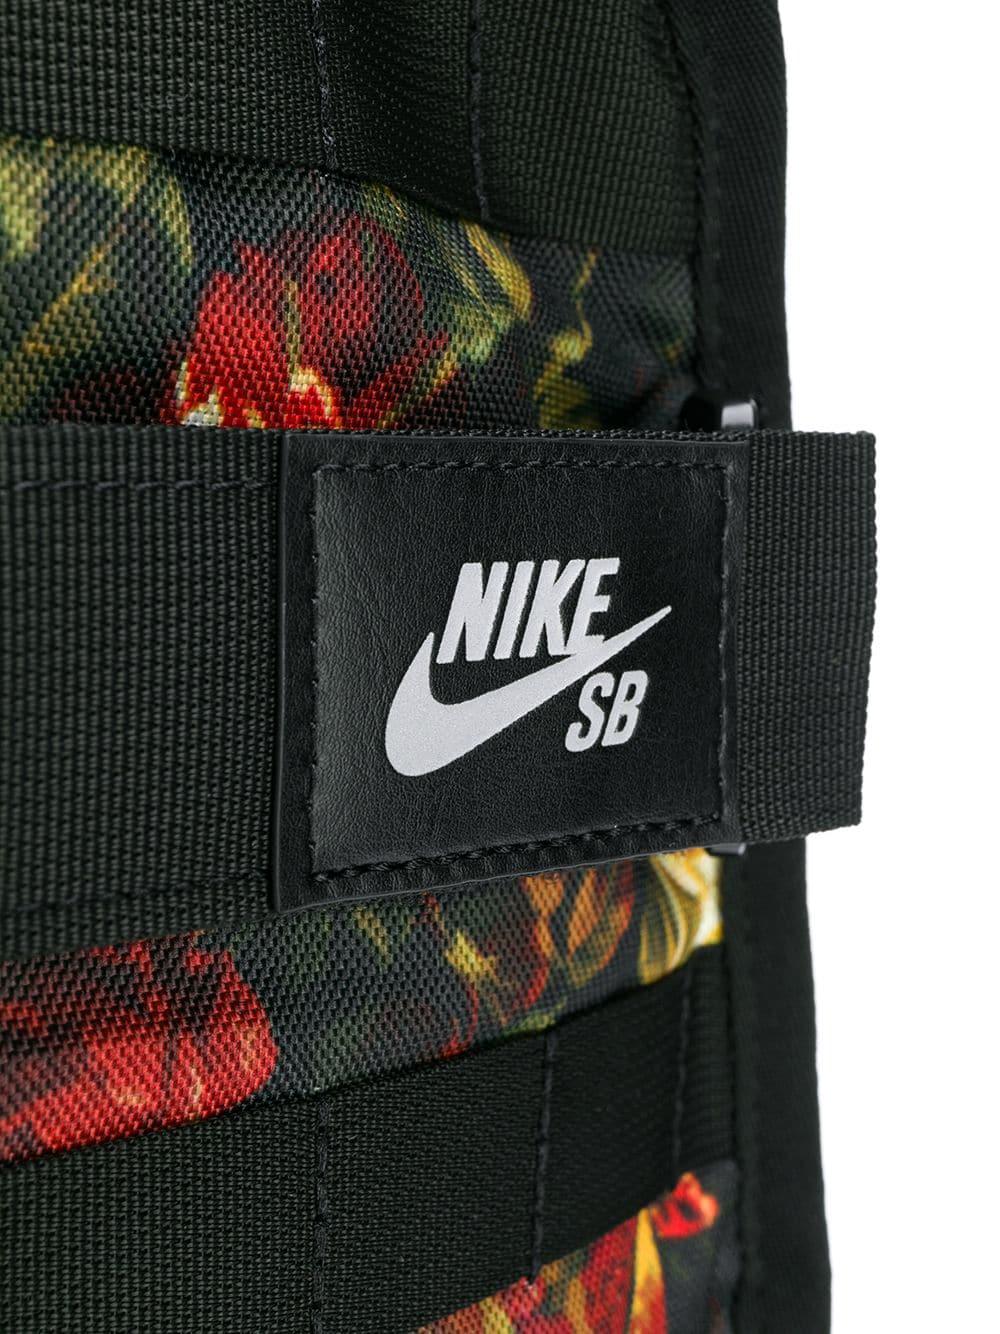 Nike Floral Print Backpack in Black for Men | Lyst